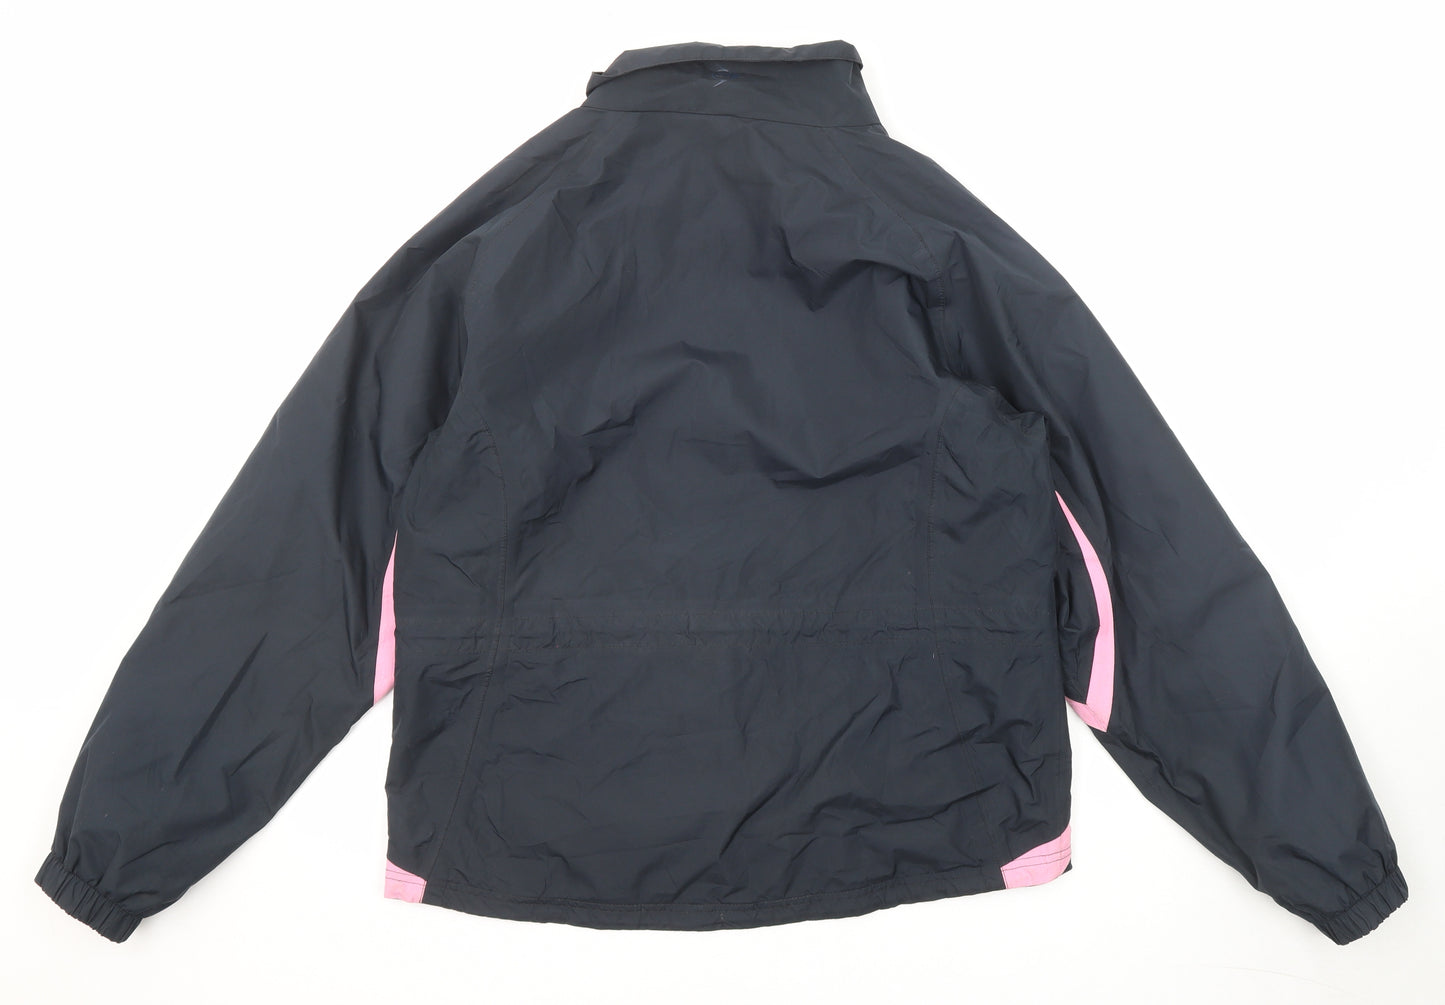 Dunlop Womens Black Windbreaker Jacket Size 16 Zip